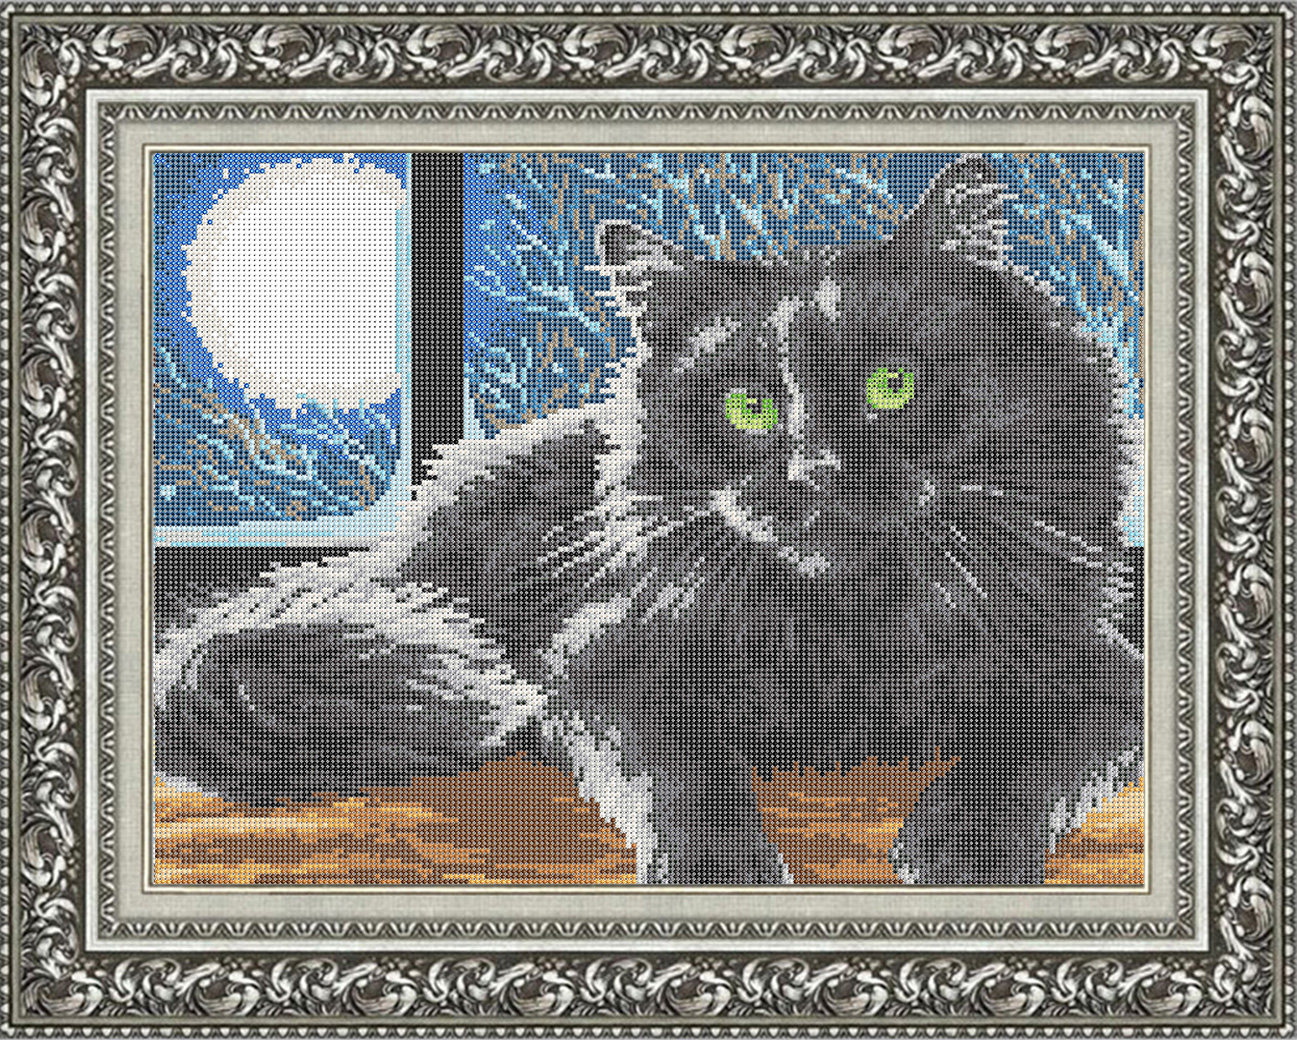 Лунный кот савелкинский пр 2